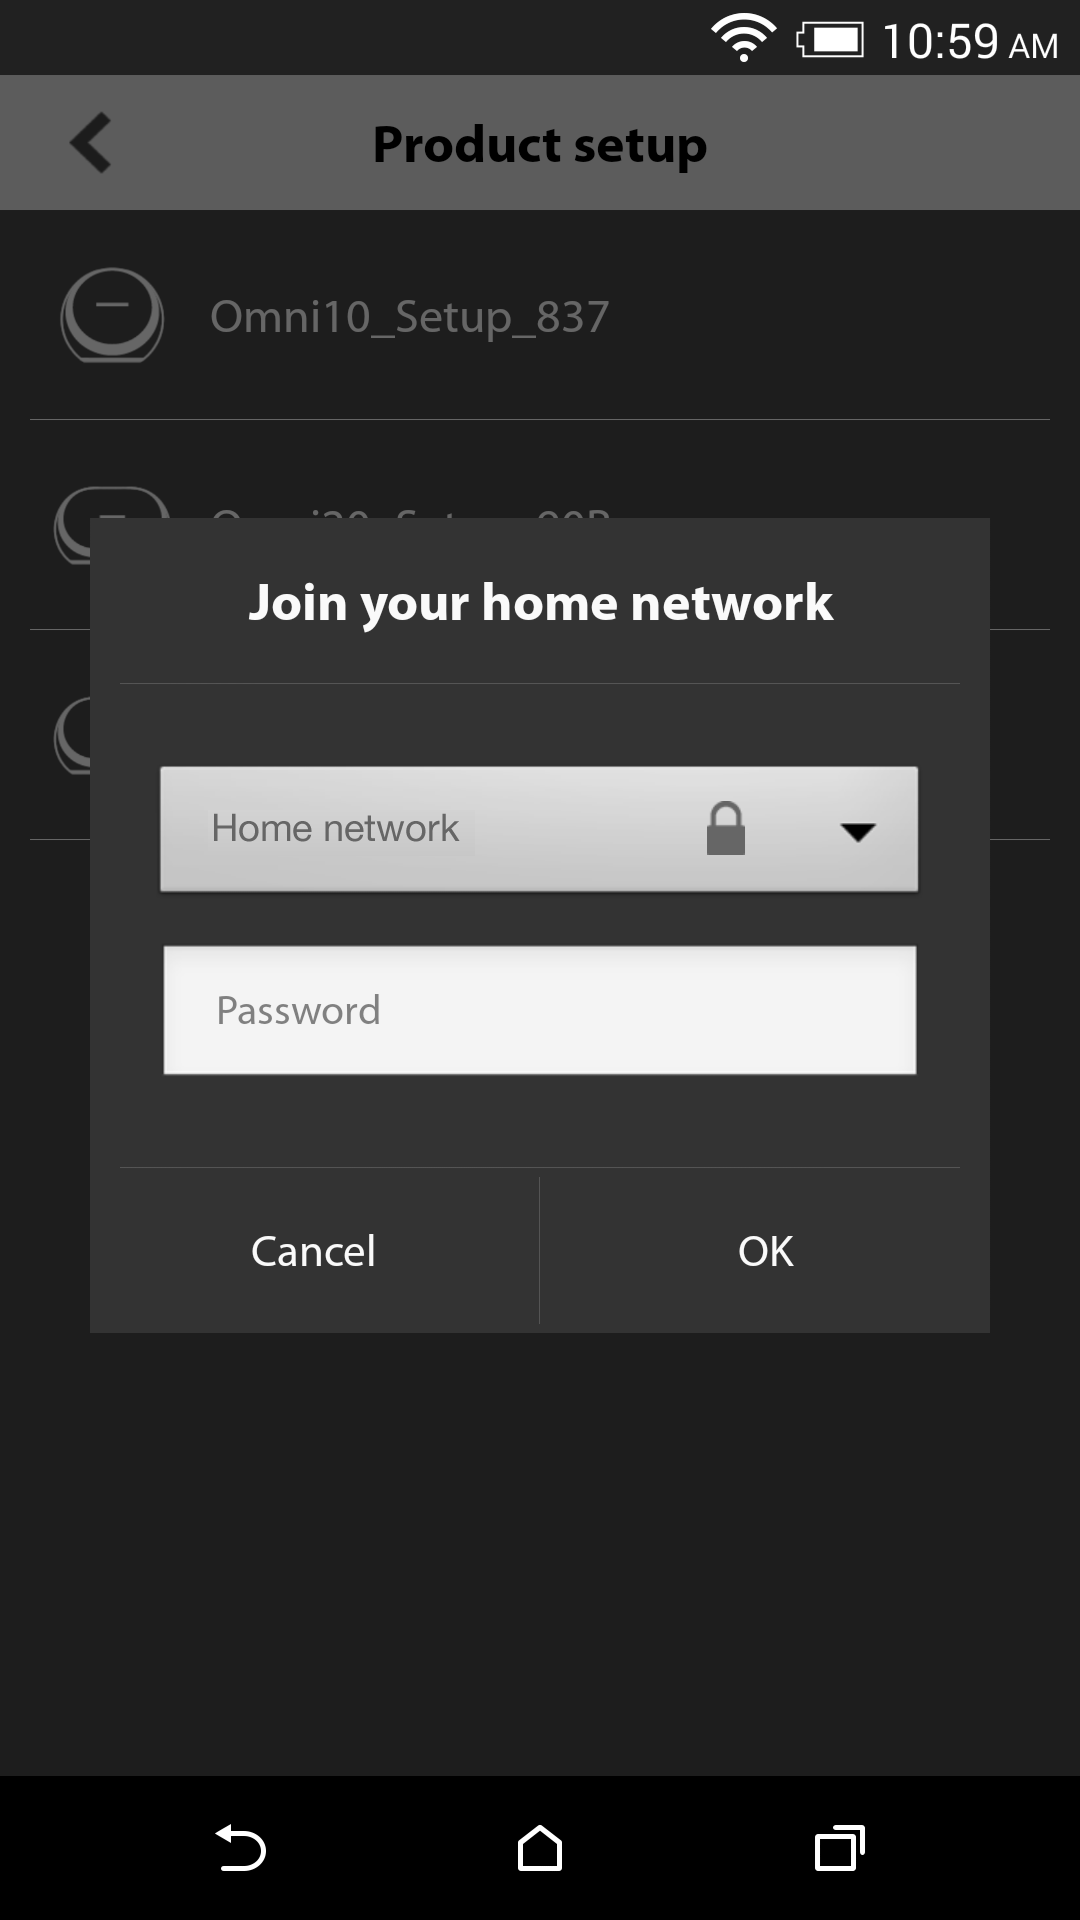 Wählen Sie aus der Liste der verfügbaren Netzwerke Ihr Heimnetzwerk aus und tragen Sie anschließend in das leere Feld das Passwort Ihres Heimnetzwerks ein.